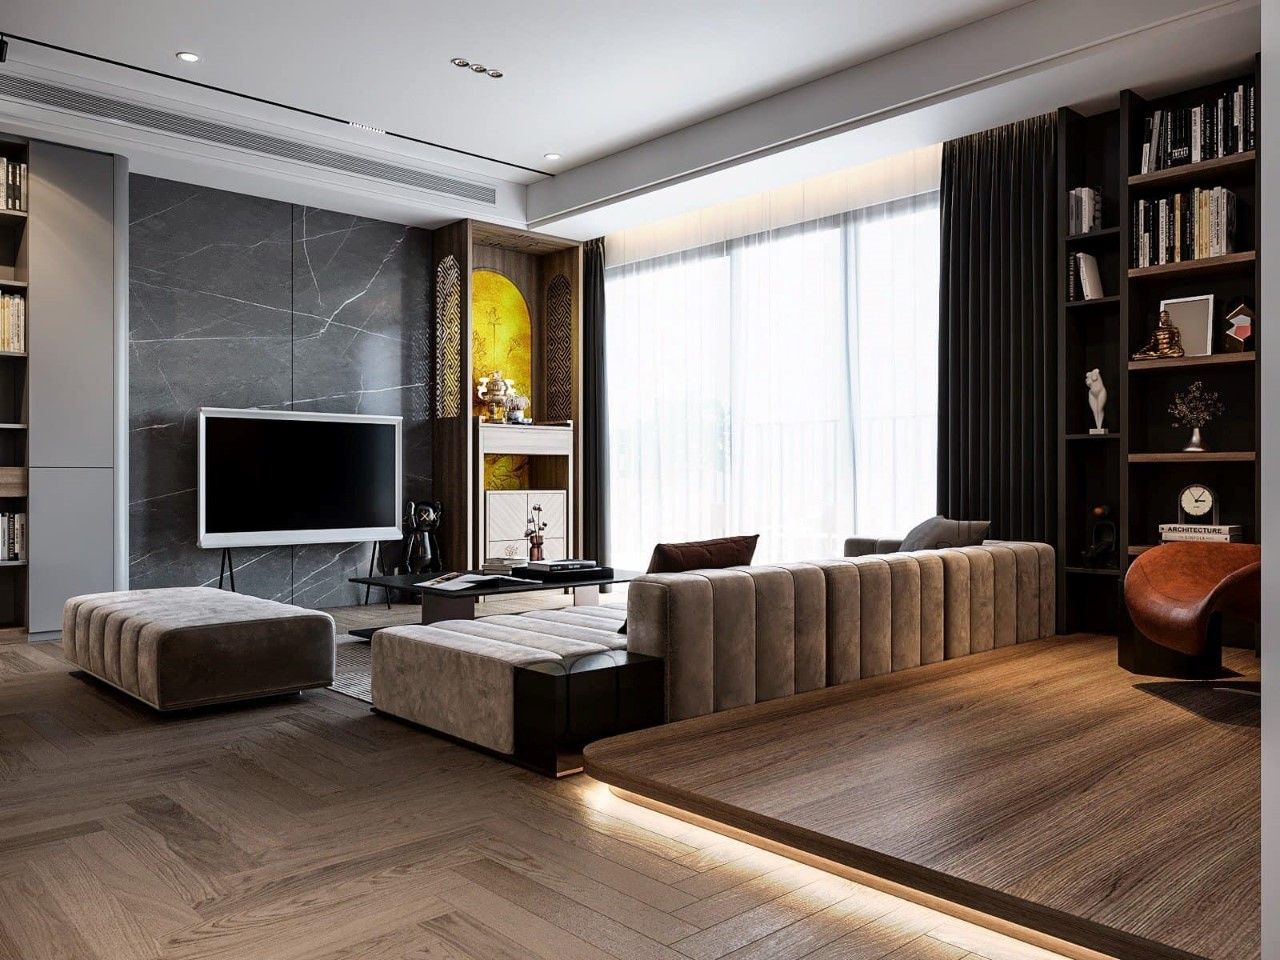 Không gian phòng khách hiện đại và ấn tượng với gam màu nổi bật, thu hút